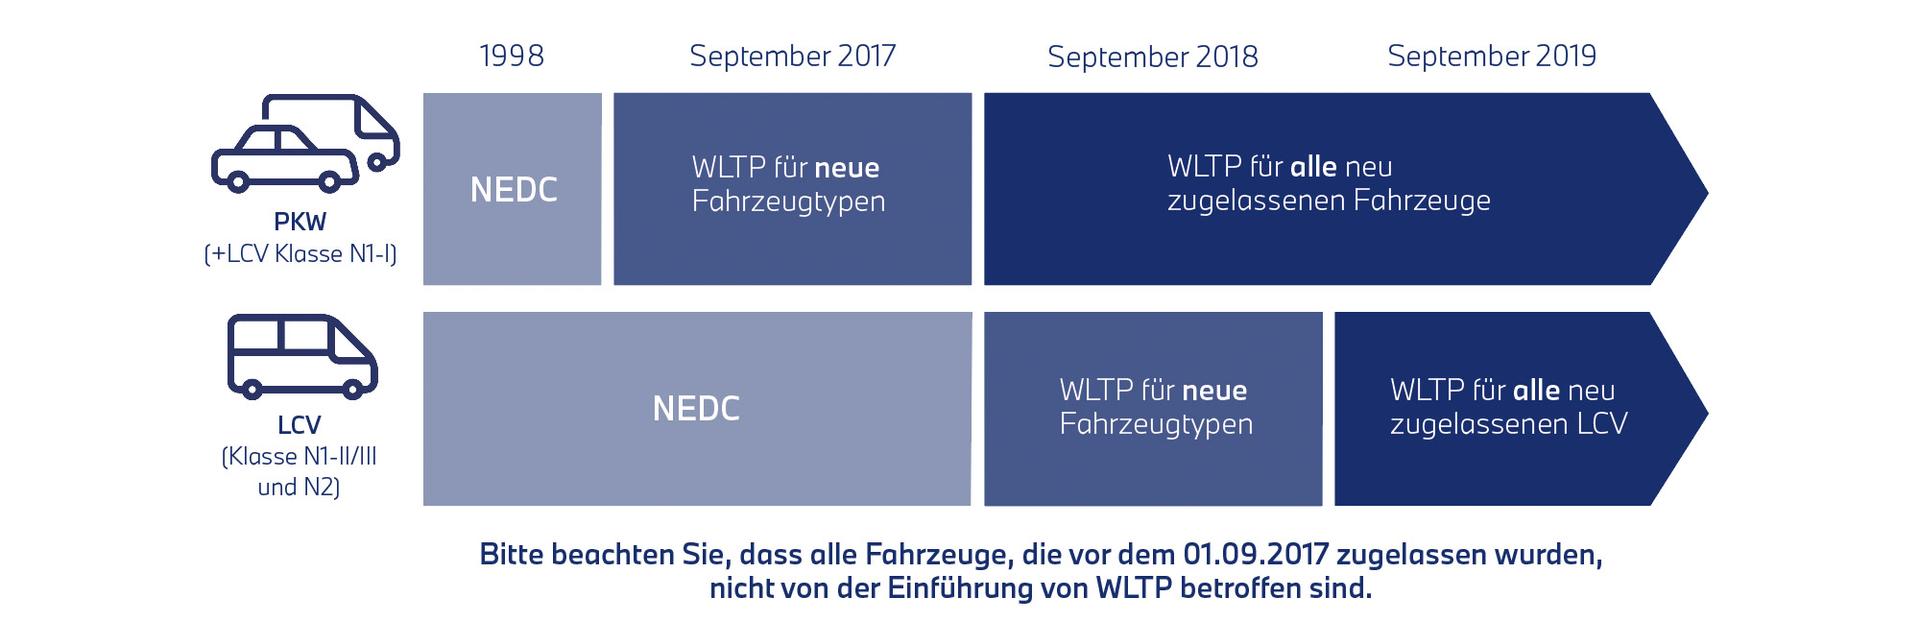 Schaubild Einführung von WLTP